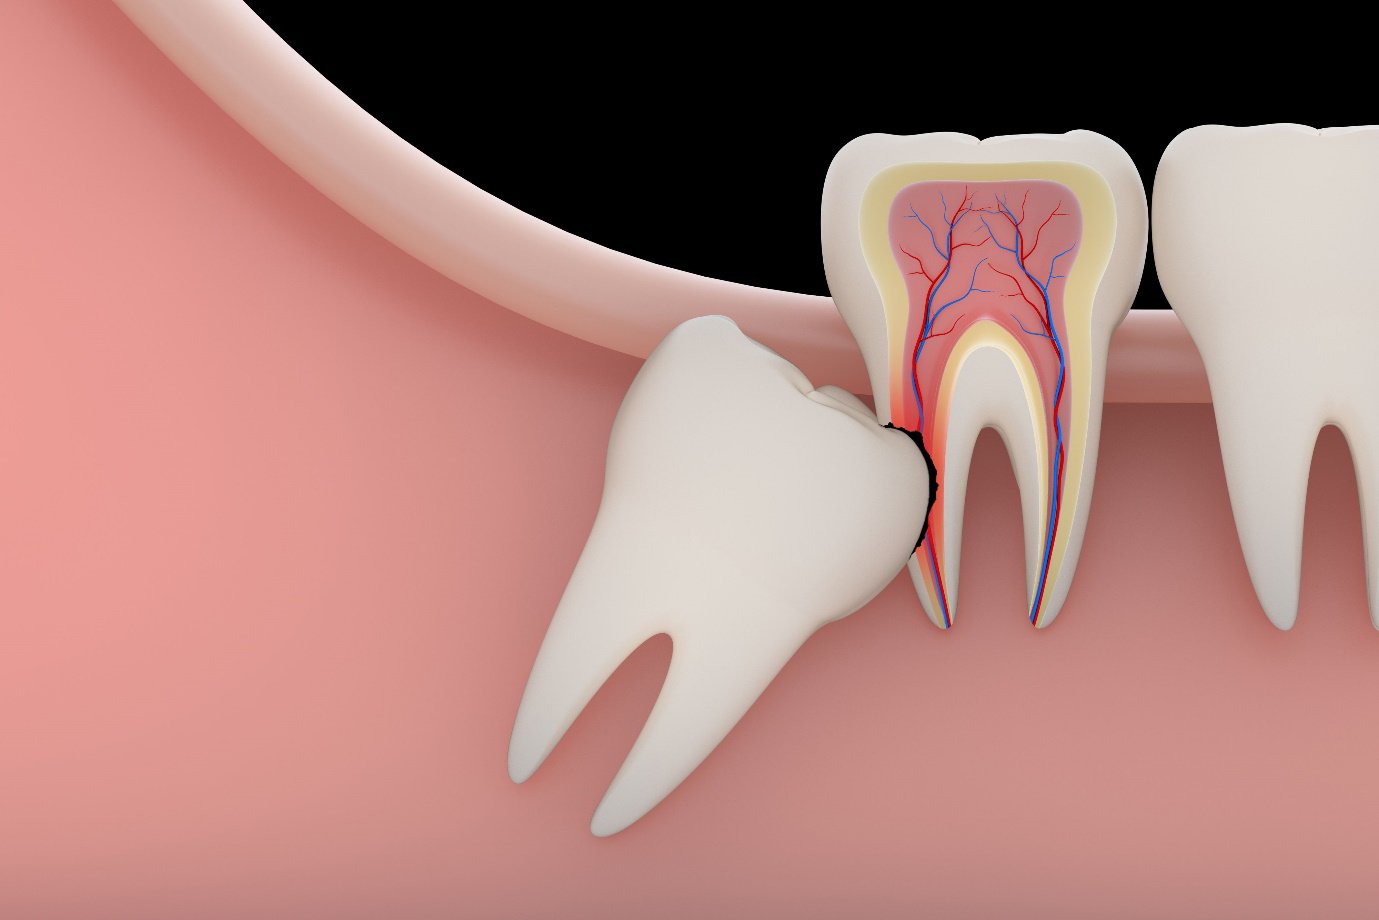 Nhổ răng khôn có ảnh hưởng gì?